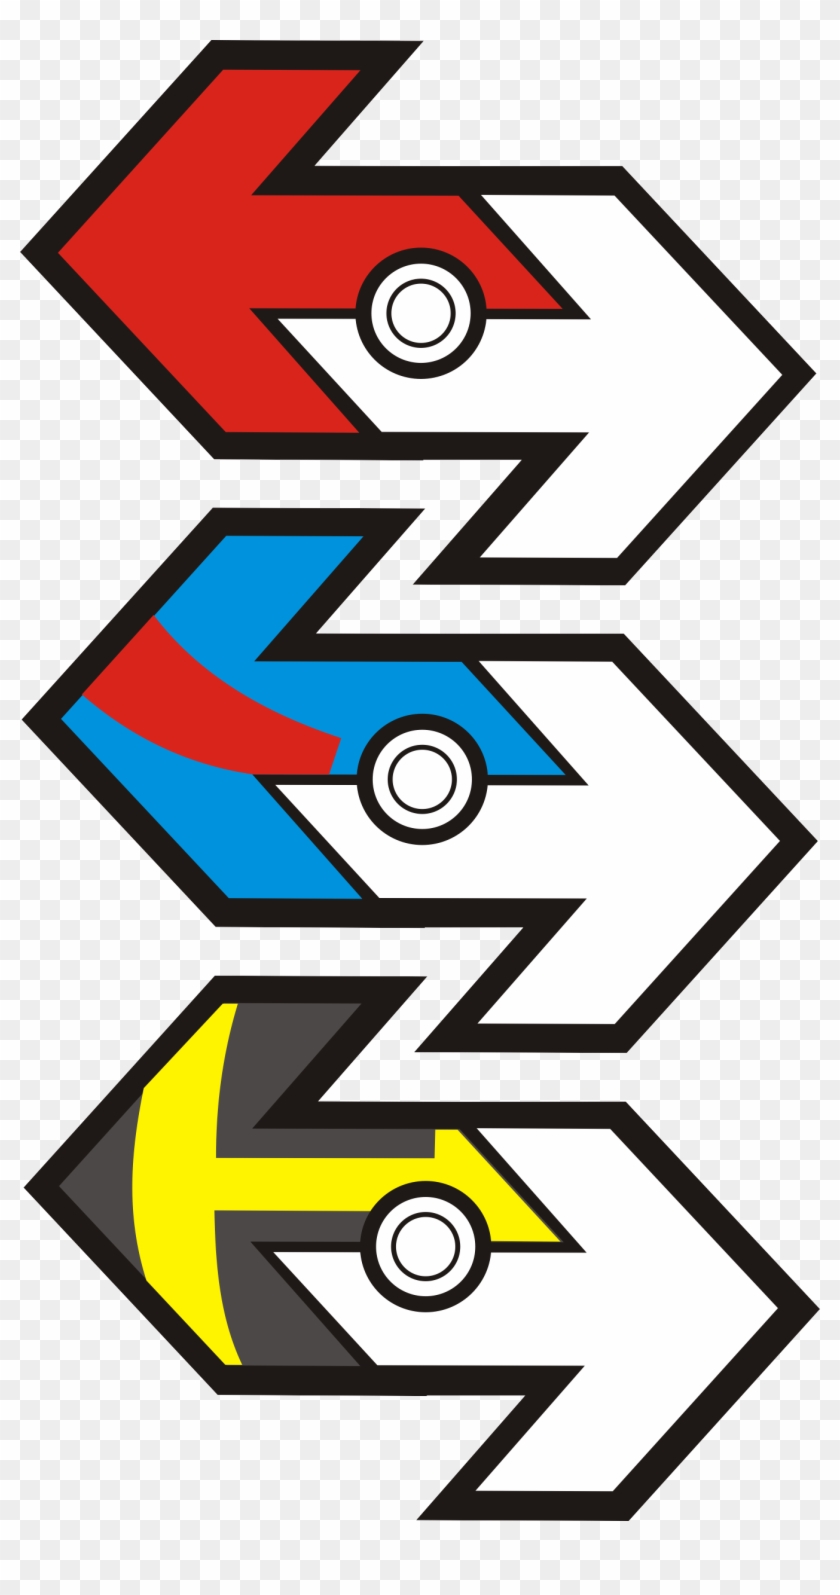 Original Pokemon Go Trade Stickers Template - Pokemon Go Trade Sticker #1440582